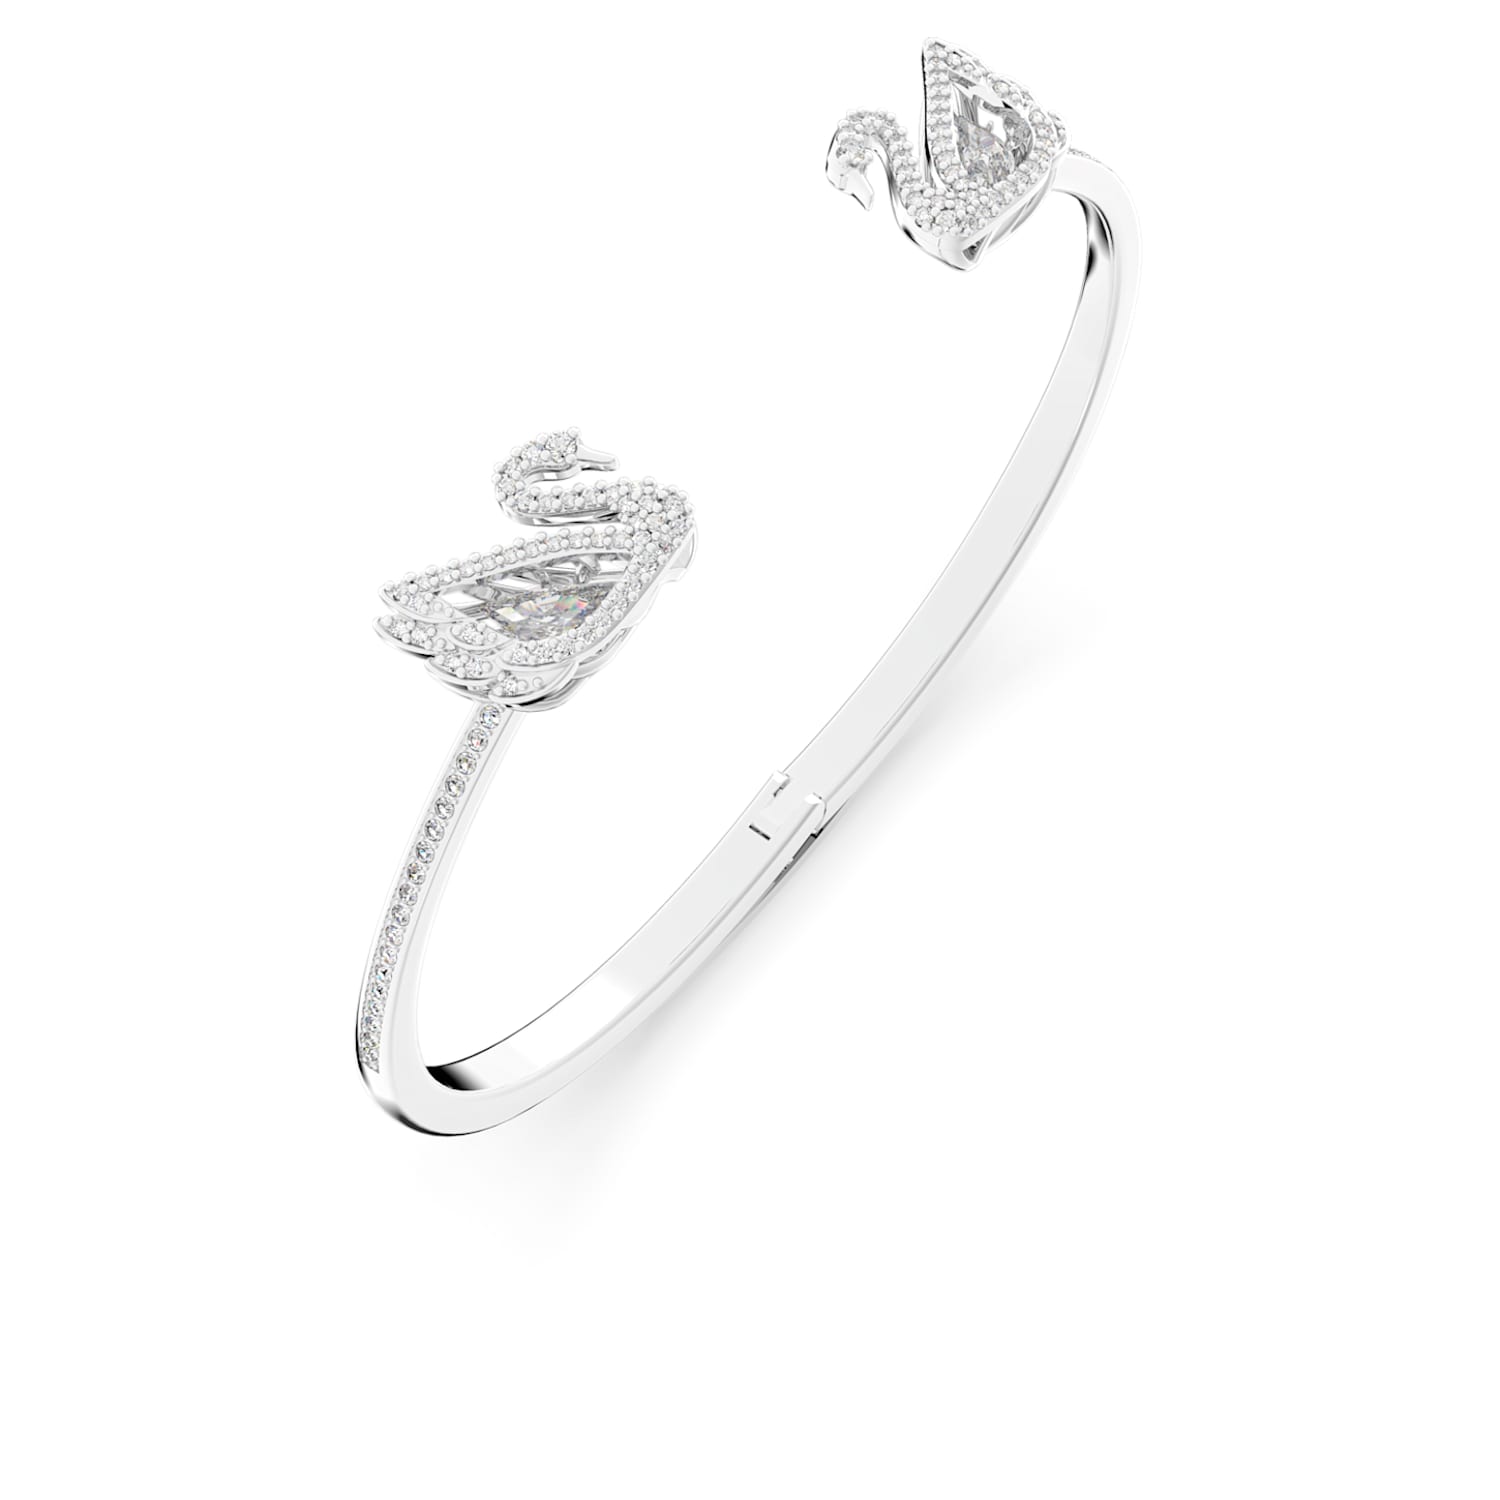 Swan Bracelet Necklace Earrings Set Black and White Full Diamond Counter